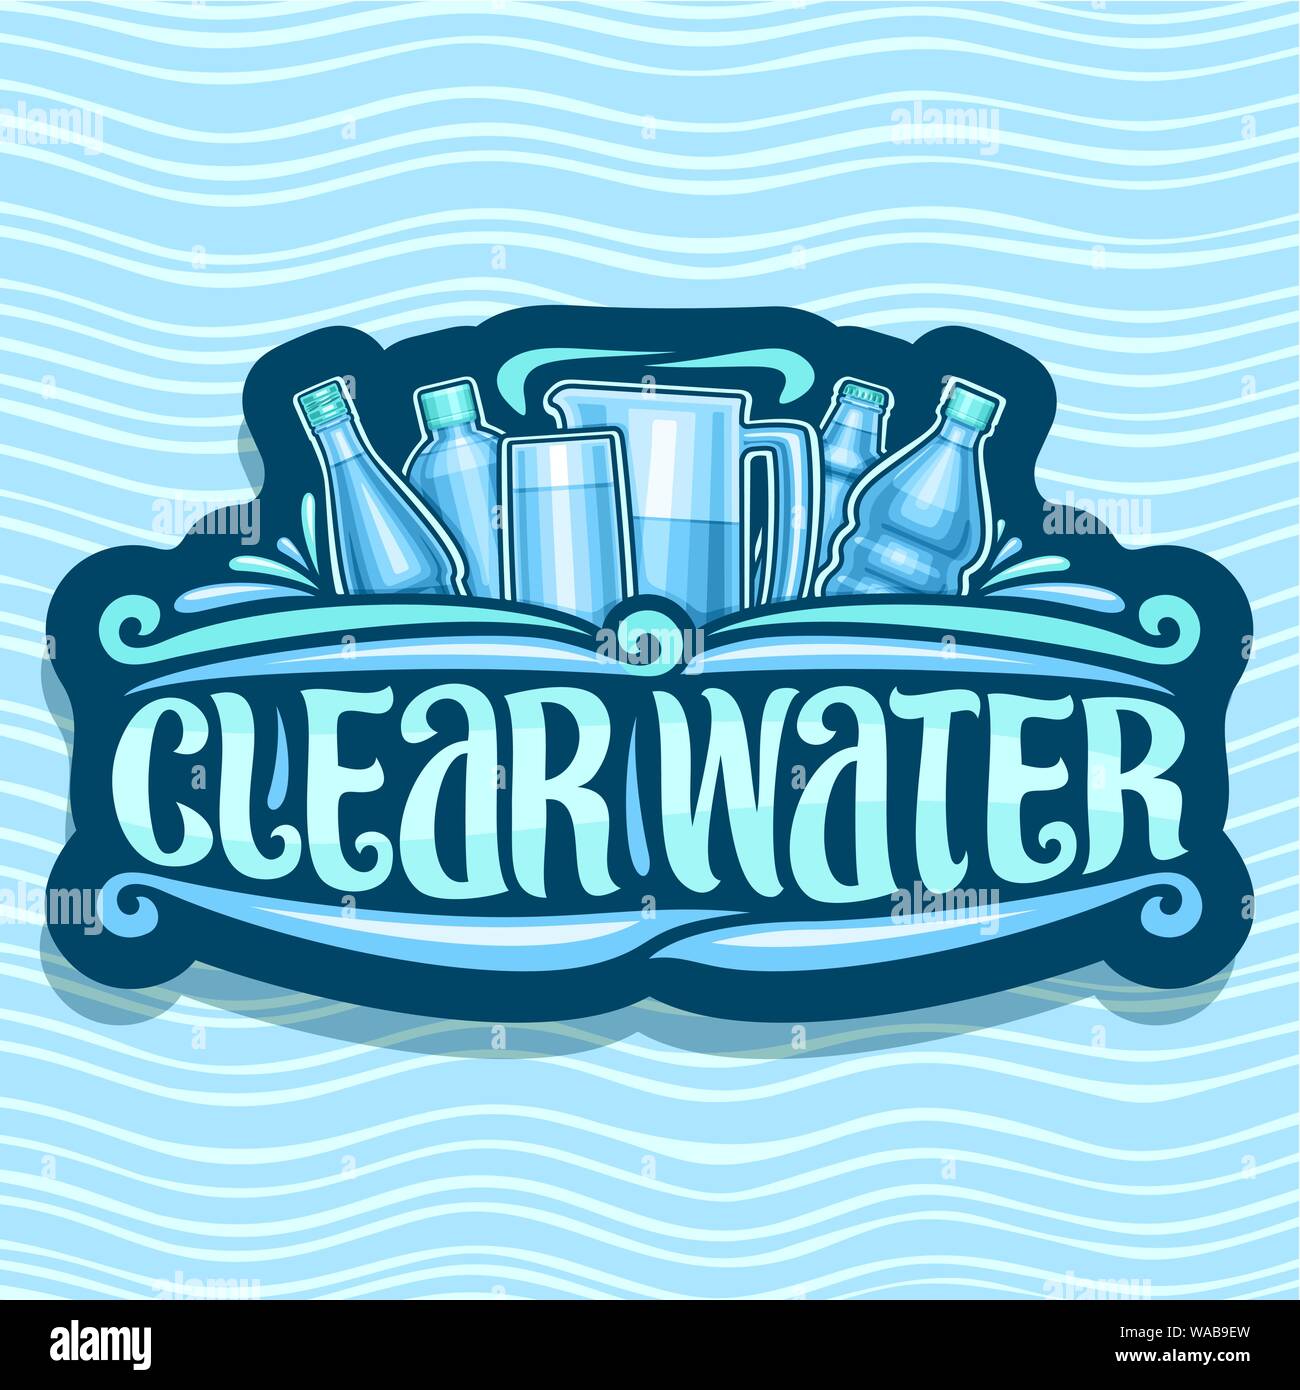 Vektor logo für klares Wasser, dunkle retro Aufkleber mit verschiedenen Plastikflaschen und Kanne mit Glas, original Pinsel Schriftzeichen für Wörter klares Wasser, signb Stock Vektor